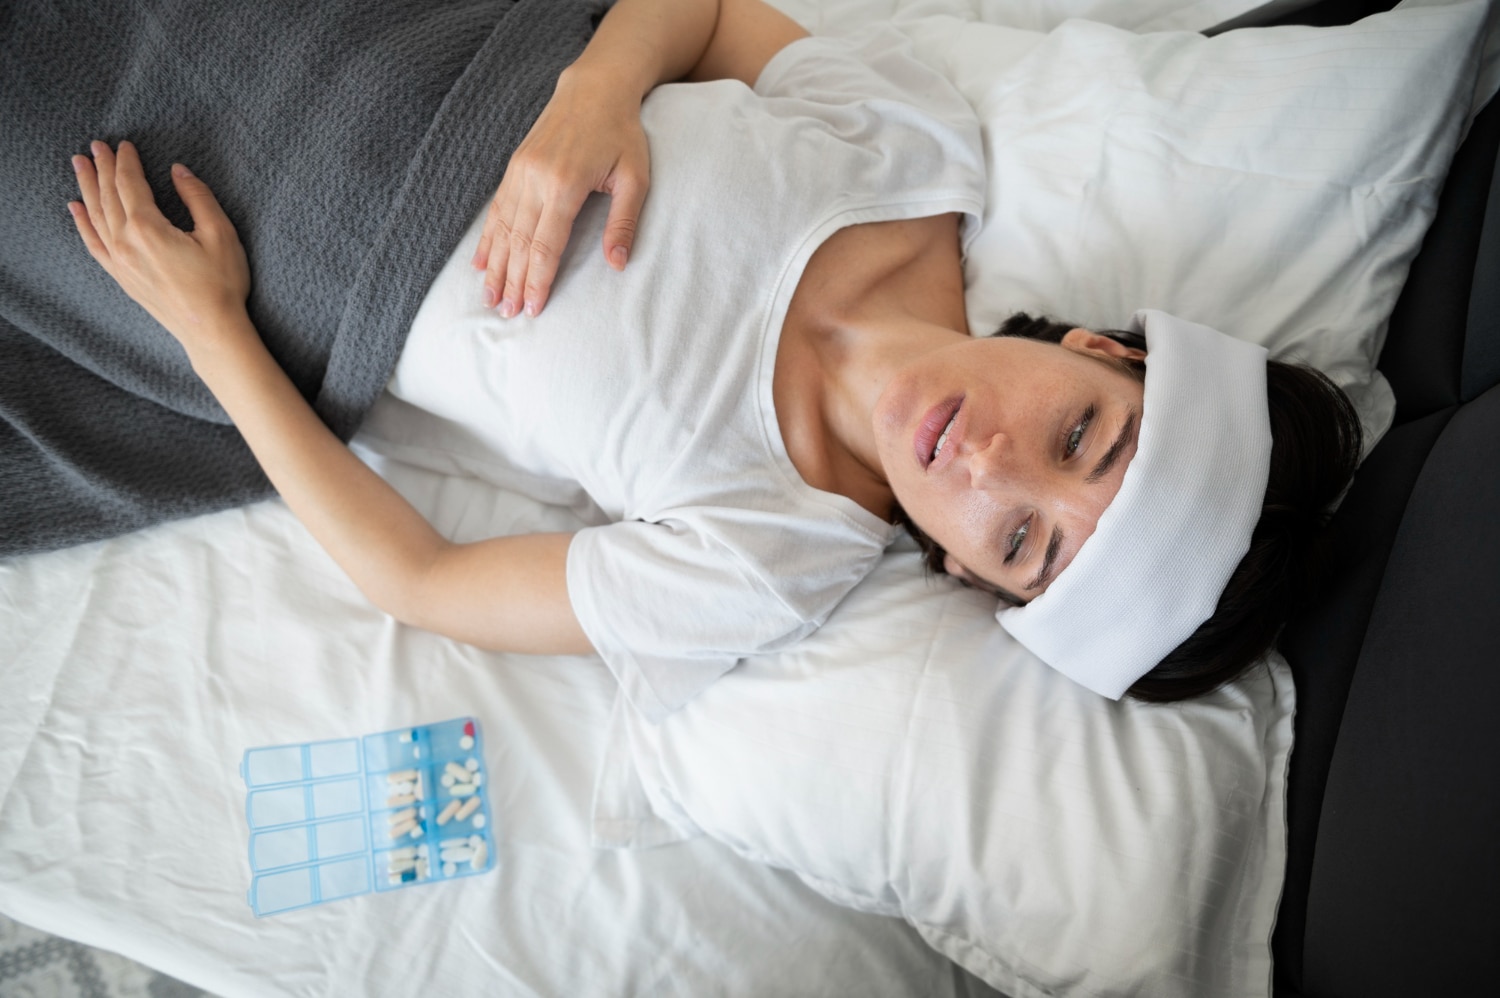 Diagnostic Steps For Sleep Apnea